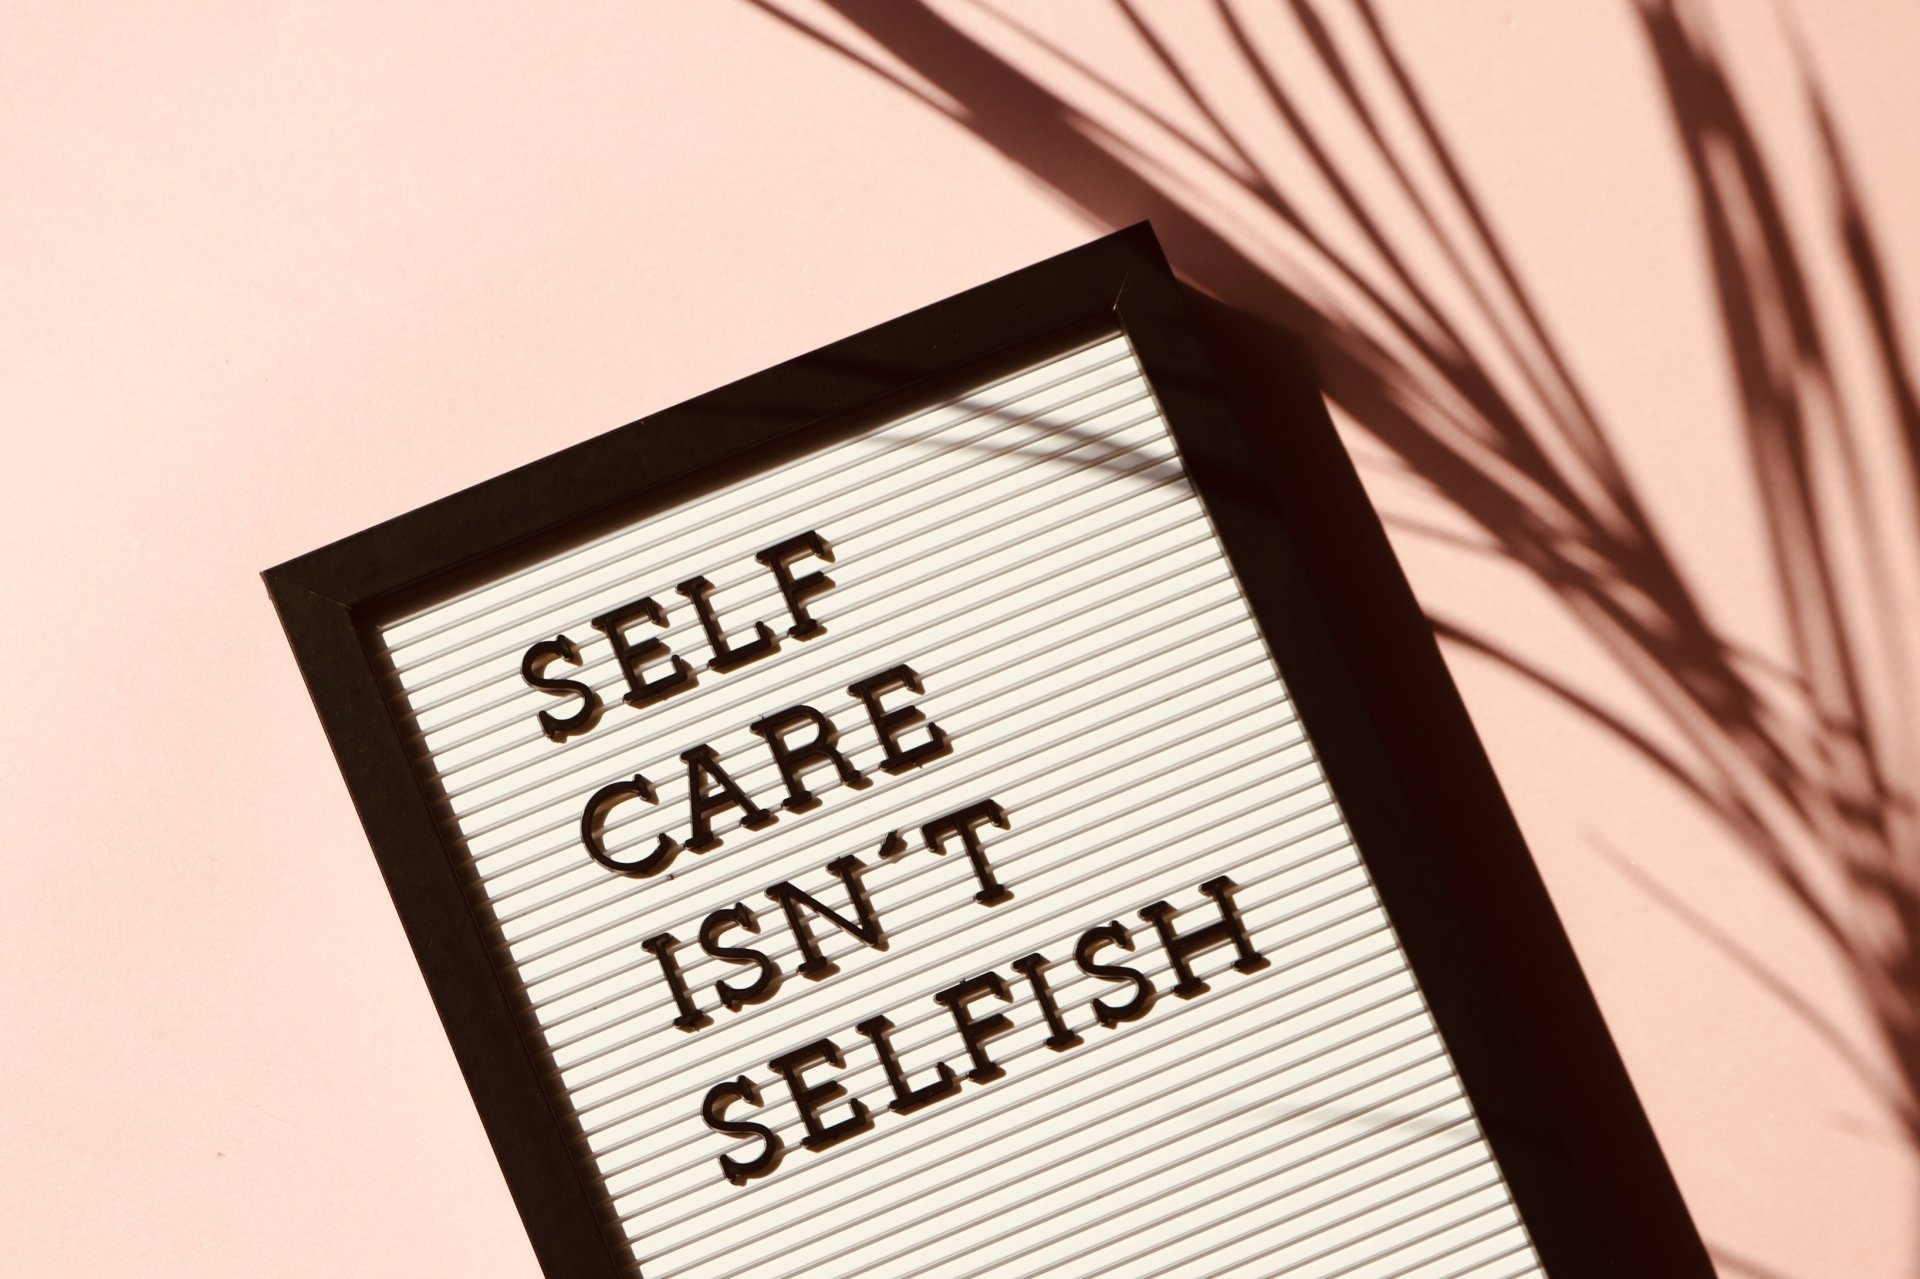 Afbeelding met tekst: Self care isn't selfish